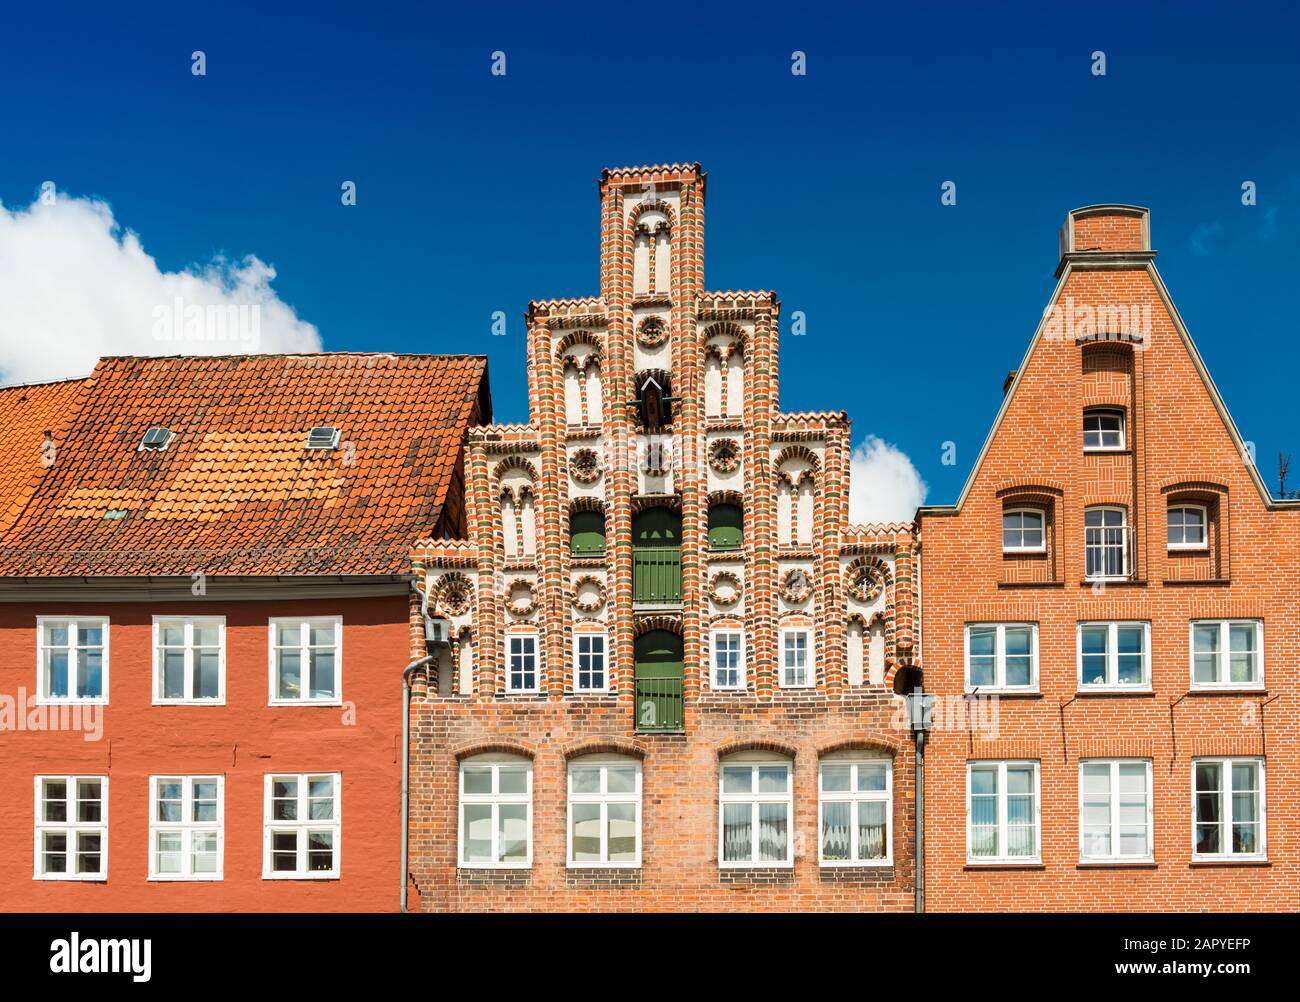 Façades des vieux bâtiments historiques en brique rouge. Ciel bleu sur l'arrière-plan. Luneburg, Allemagne Banque D'Images